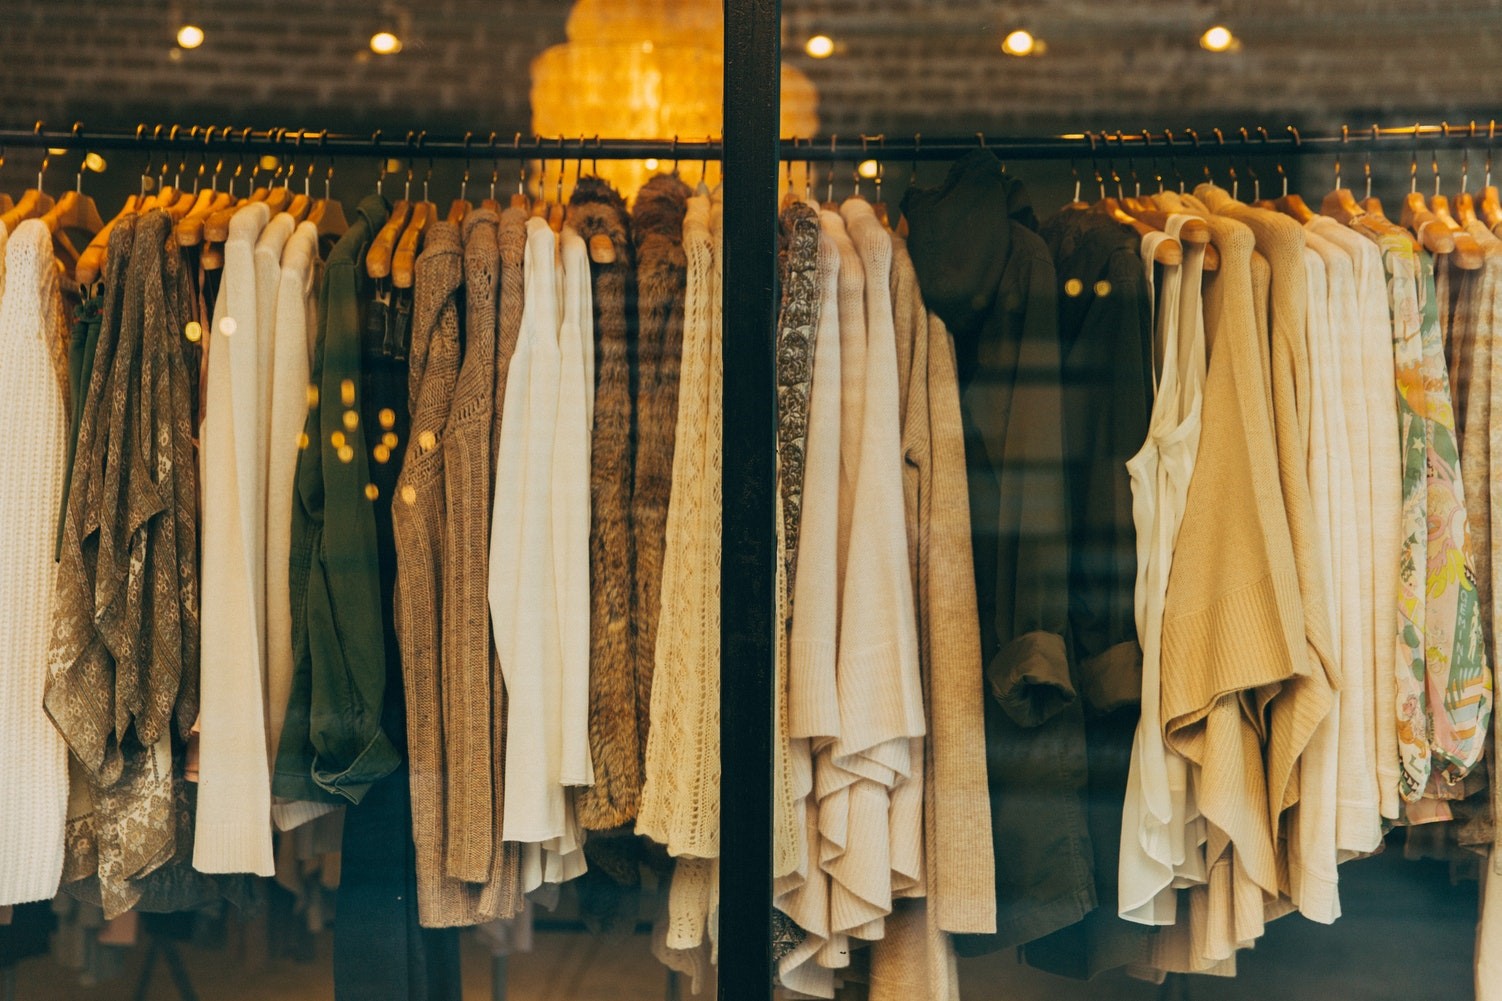 Das Bild zeigt eine Kleiderstange, auf der verschiedene Kleidungsstücke aufgereiht hängen. Die Farbgebung ist sehr natürlich, erdige Farben wie braun, creme und grün dominieren.